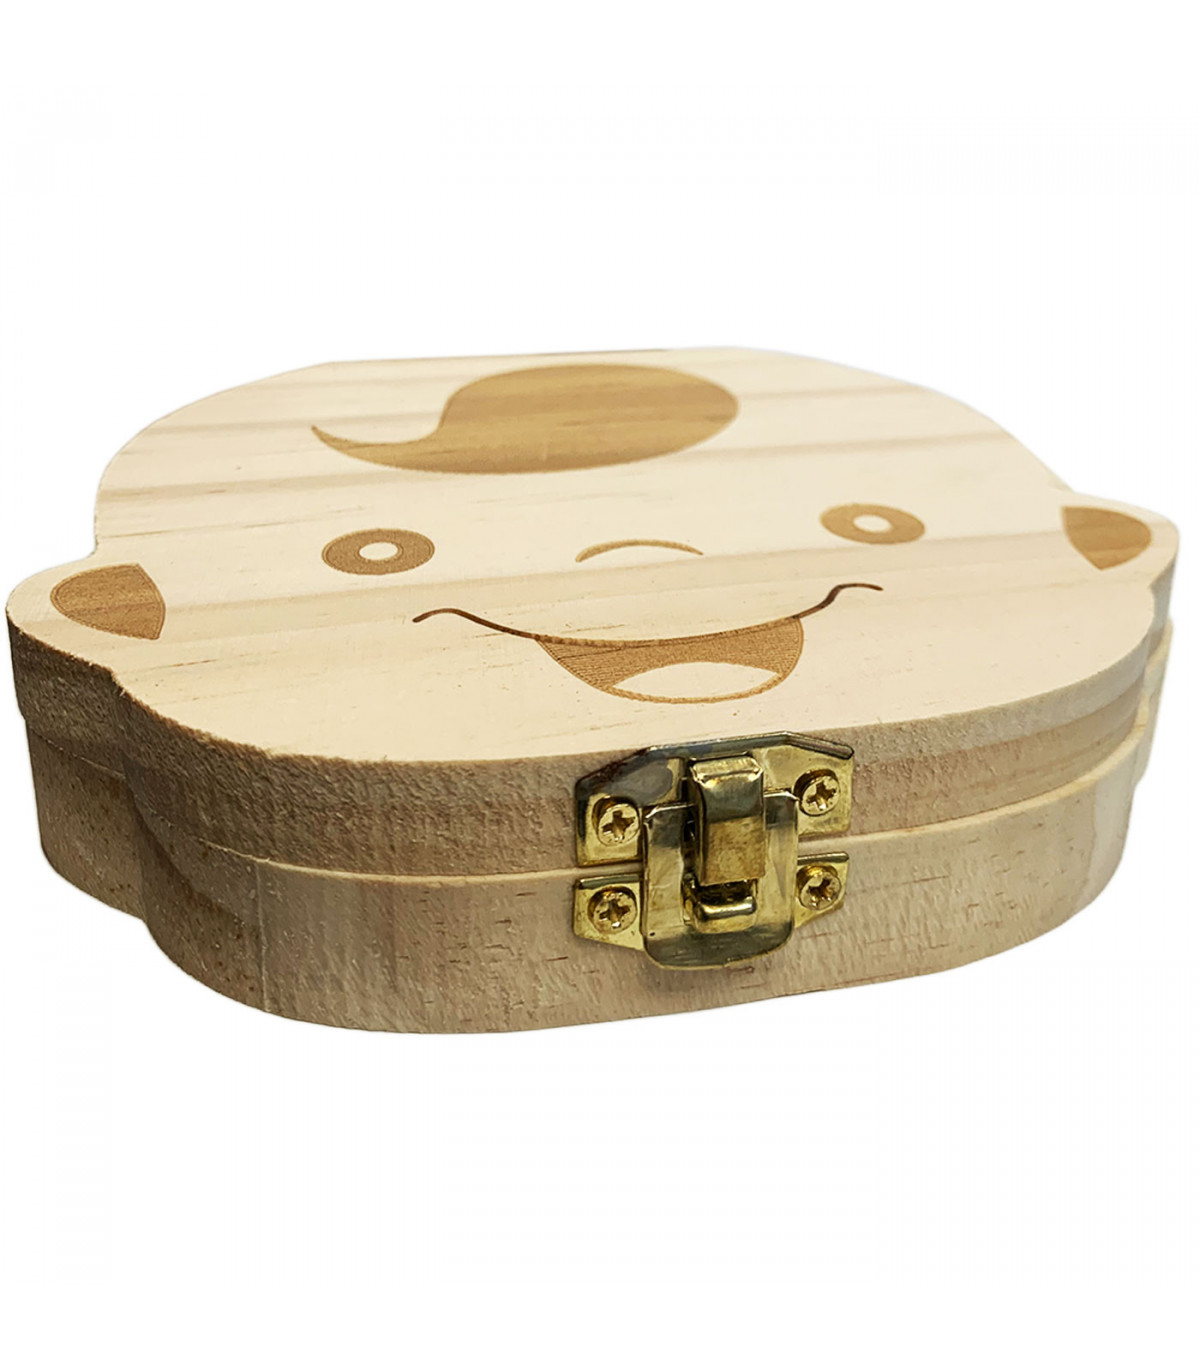 Caja de madera para guardar dientes de leche, bote y pinza